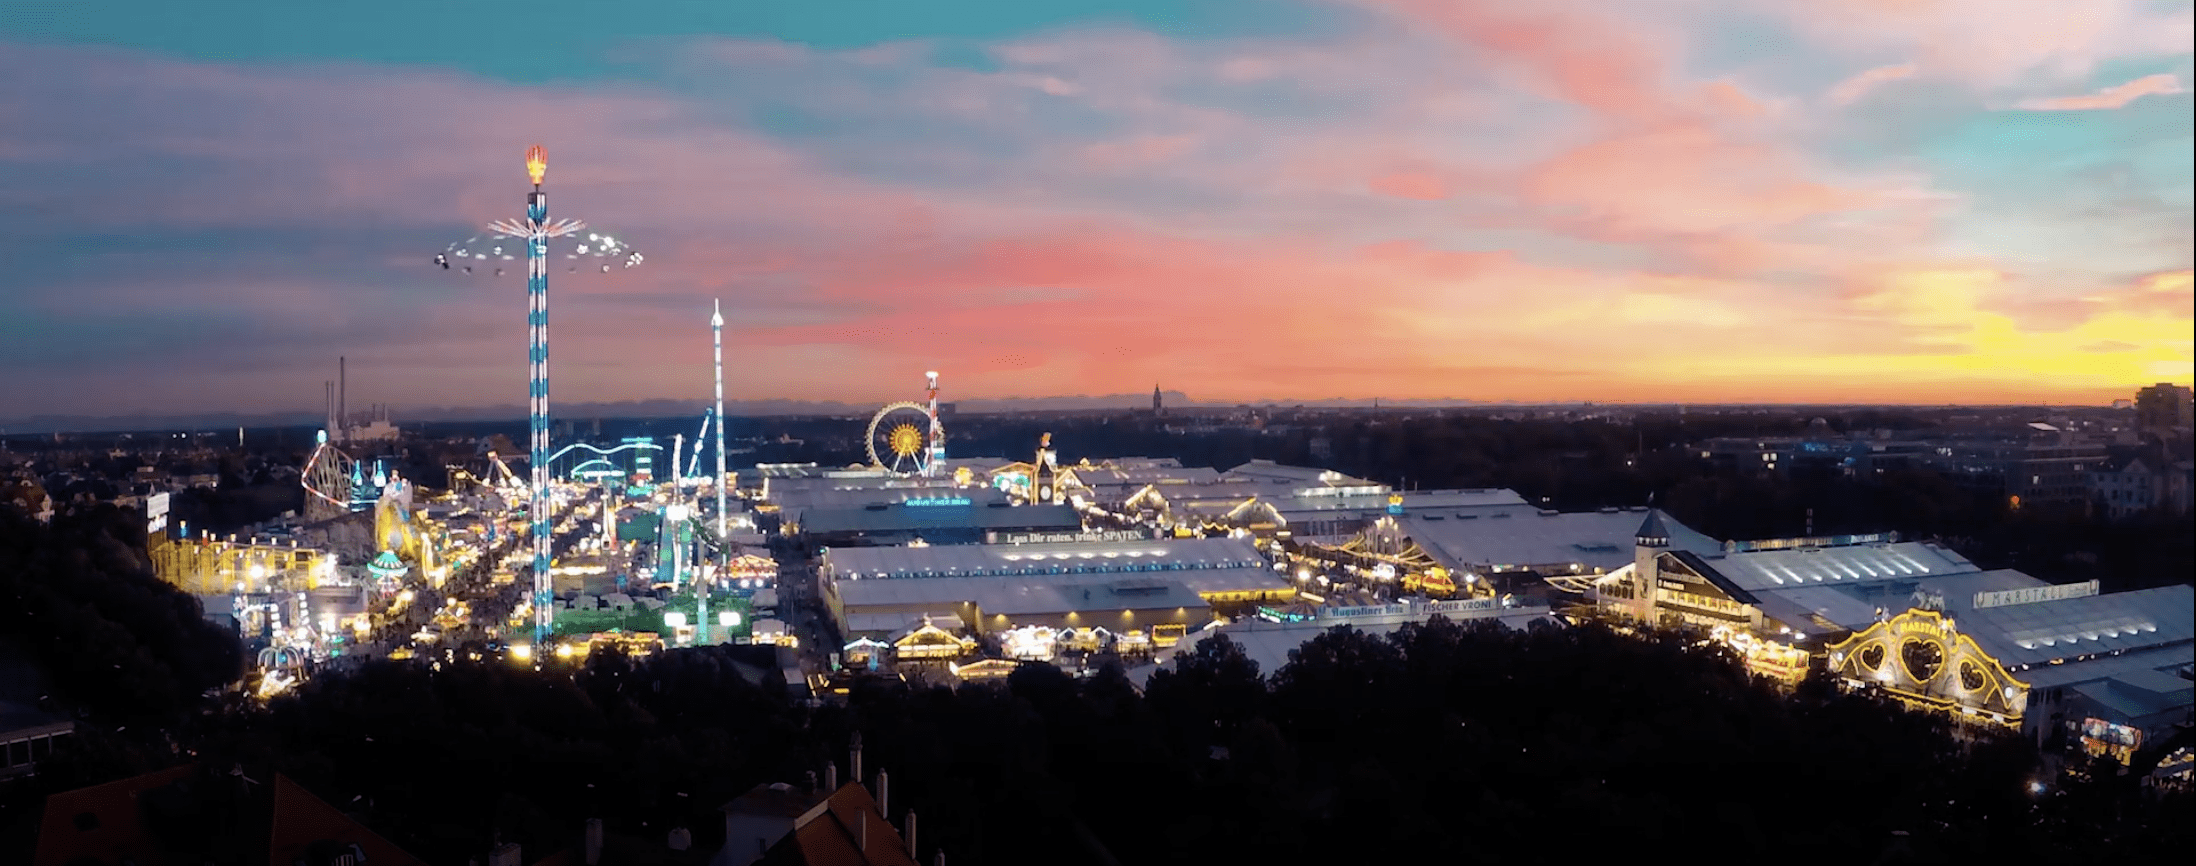 Night view of Oktoberfest skyline